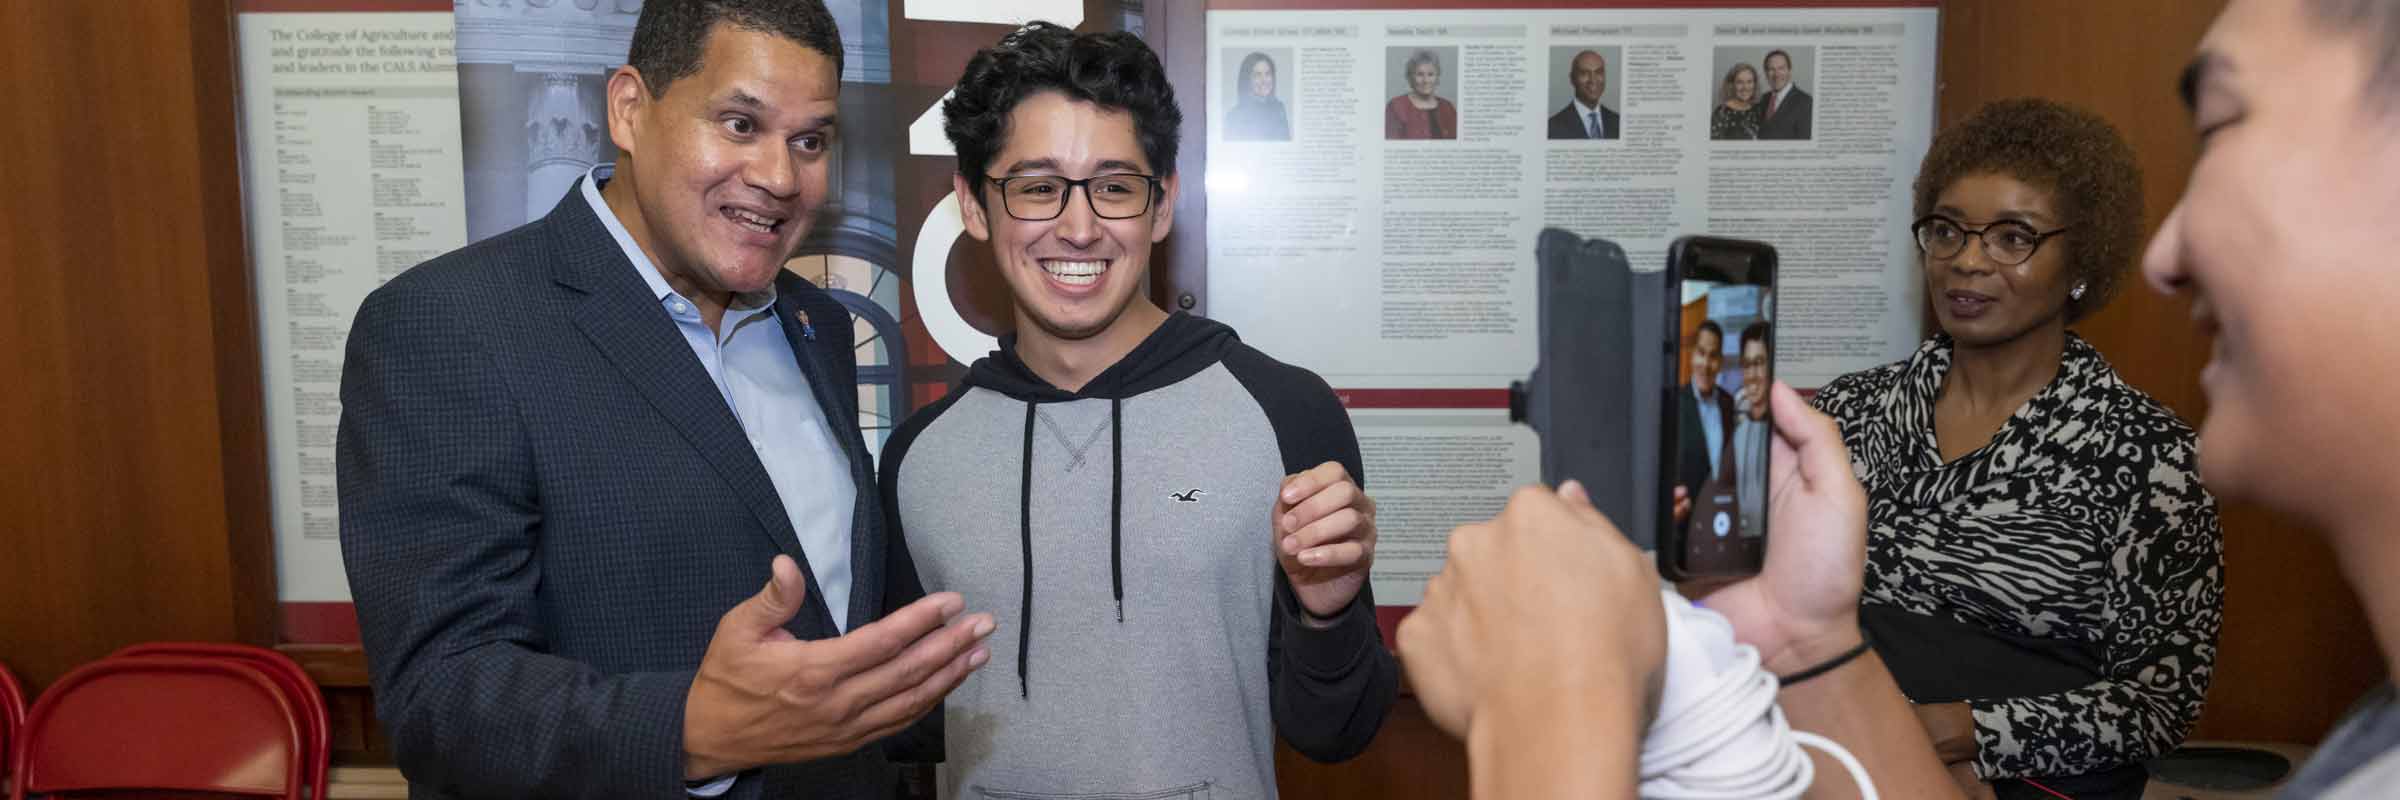 Dyson alum Reggie Fils-Aimé poses for photos with Cornell students.